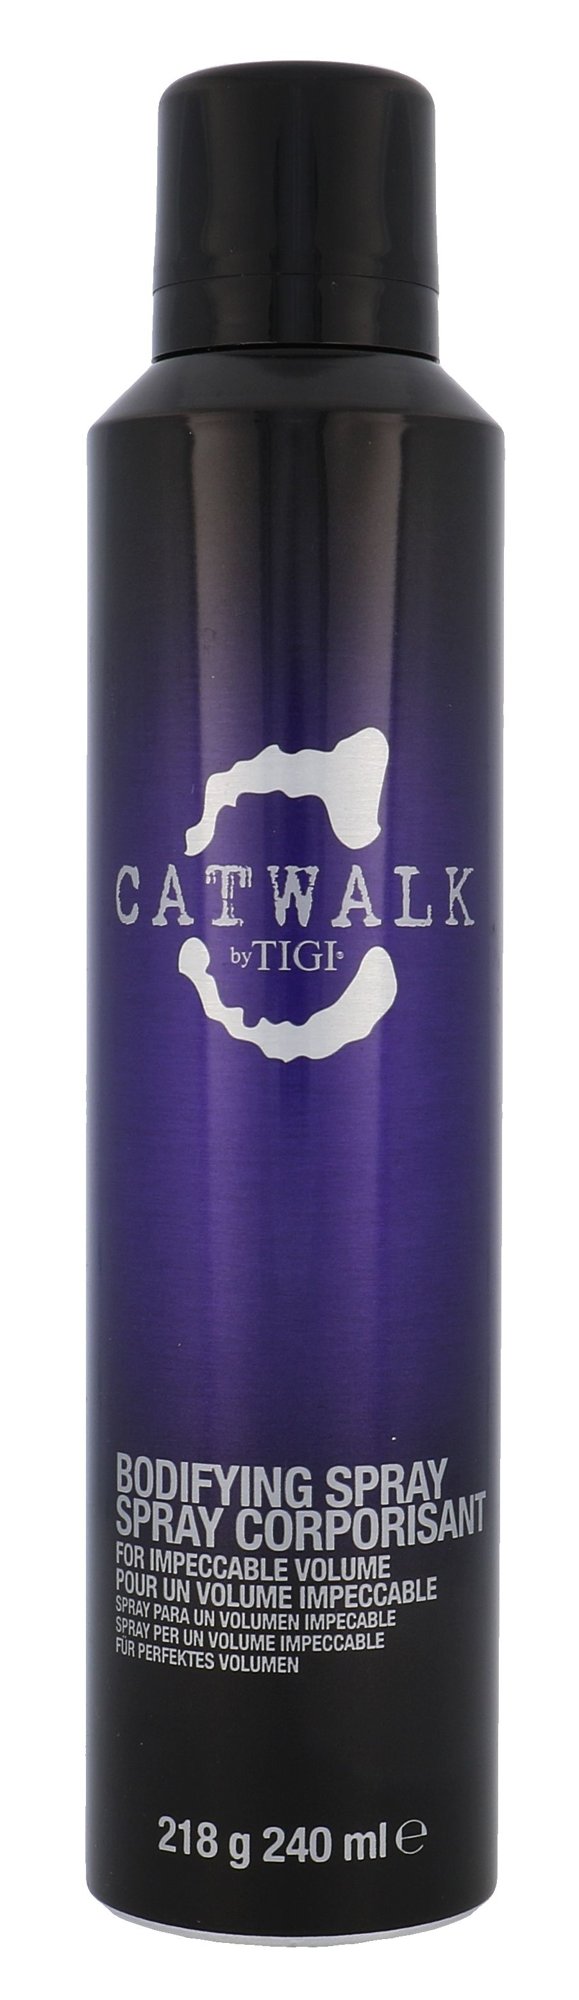 Tigi Catwalk Bodifying Spray priemonė plaukų apimčiai